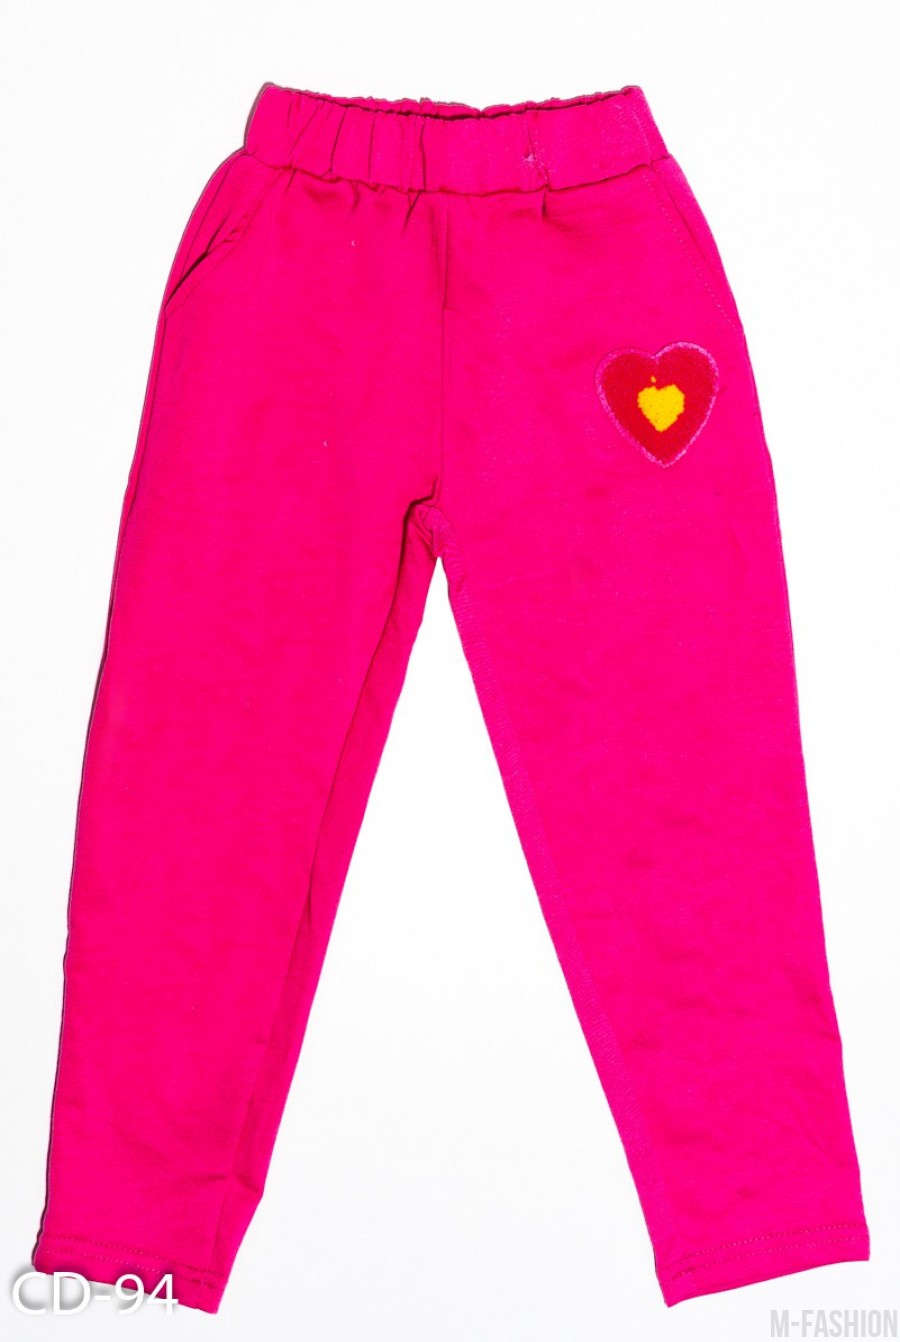 Малиновые трикотажные спортивные штаны с карманами и аппликацией - Фото 1